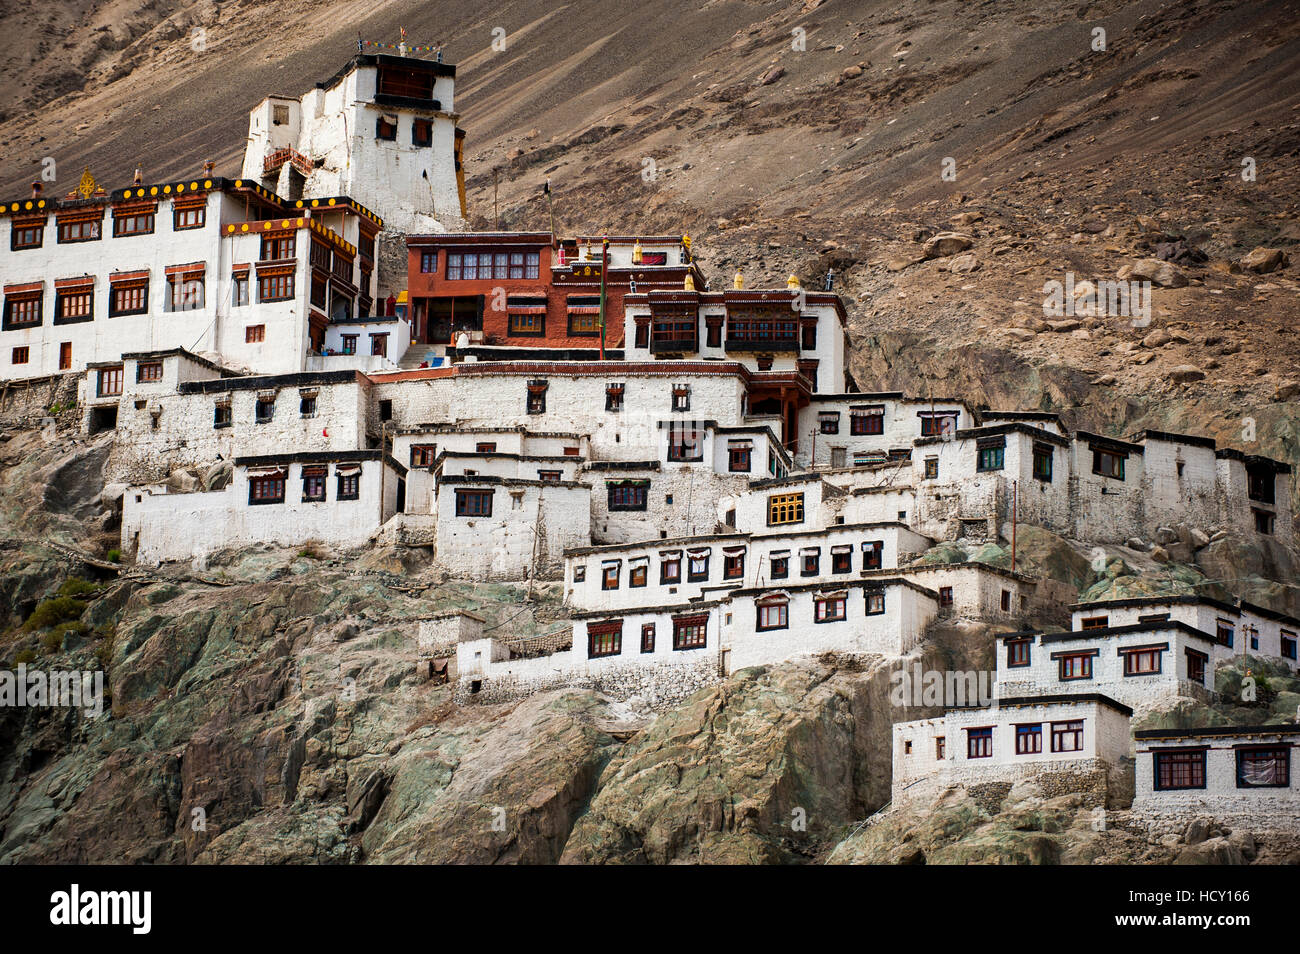 Monastères au Ladakh sont souvent perchés sur des collines ou des affleurements rocheux, Diskit, Nubra Valley, Ladakh, Inde Banque D'Images